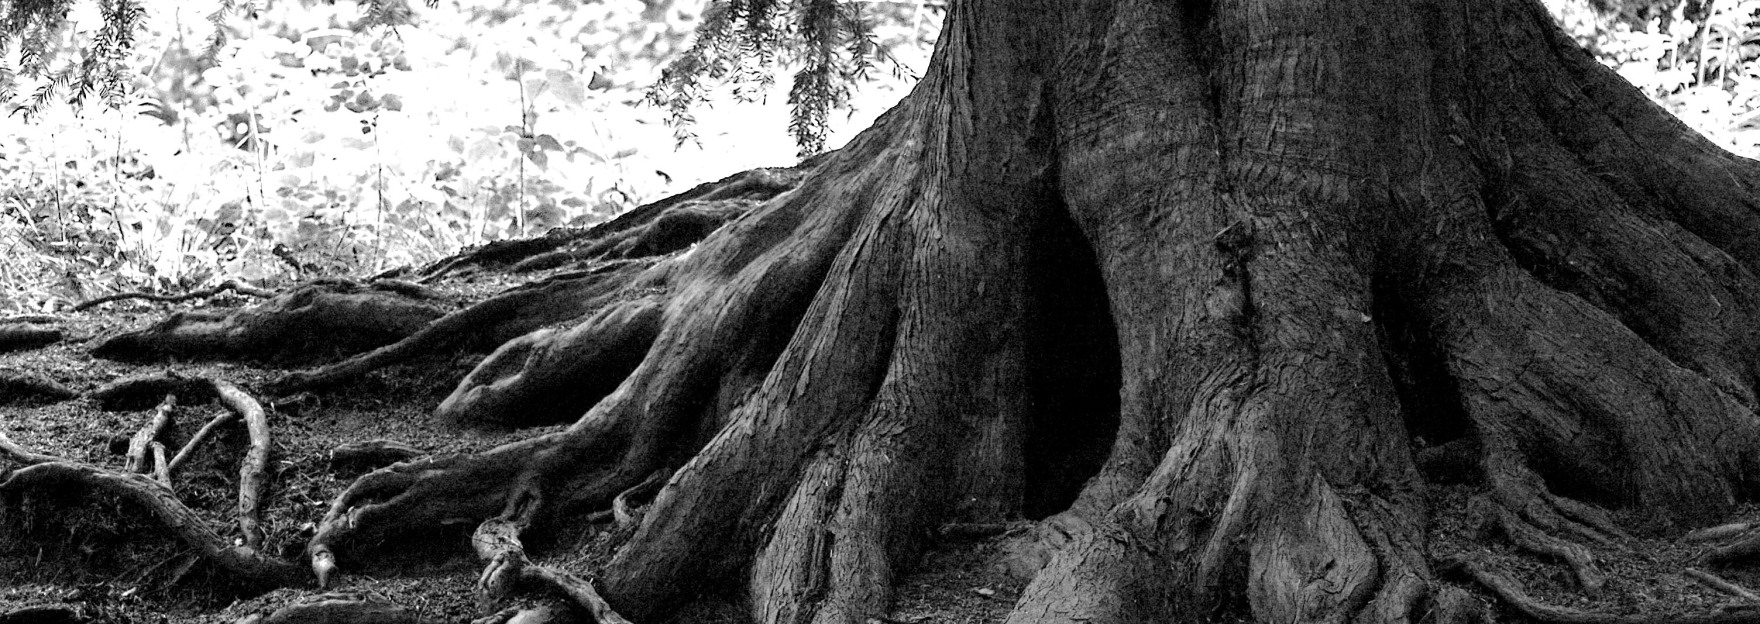 Корни тейлор. Японский дуб мидзунара. Деревья. Ствол дерева. Дерево с большими корнями.